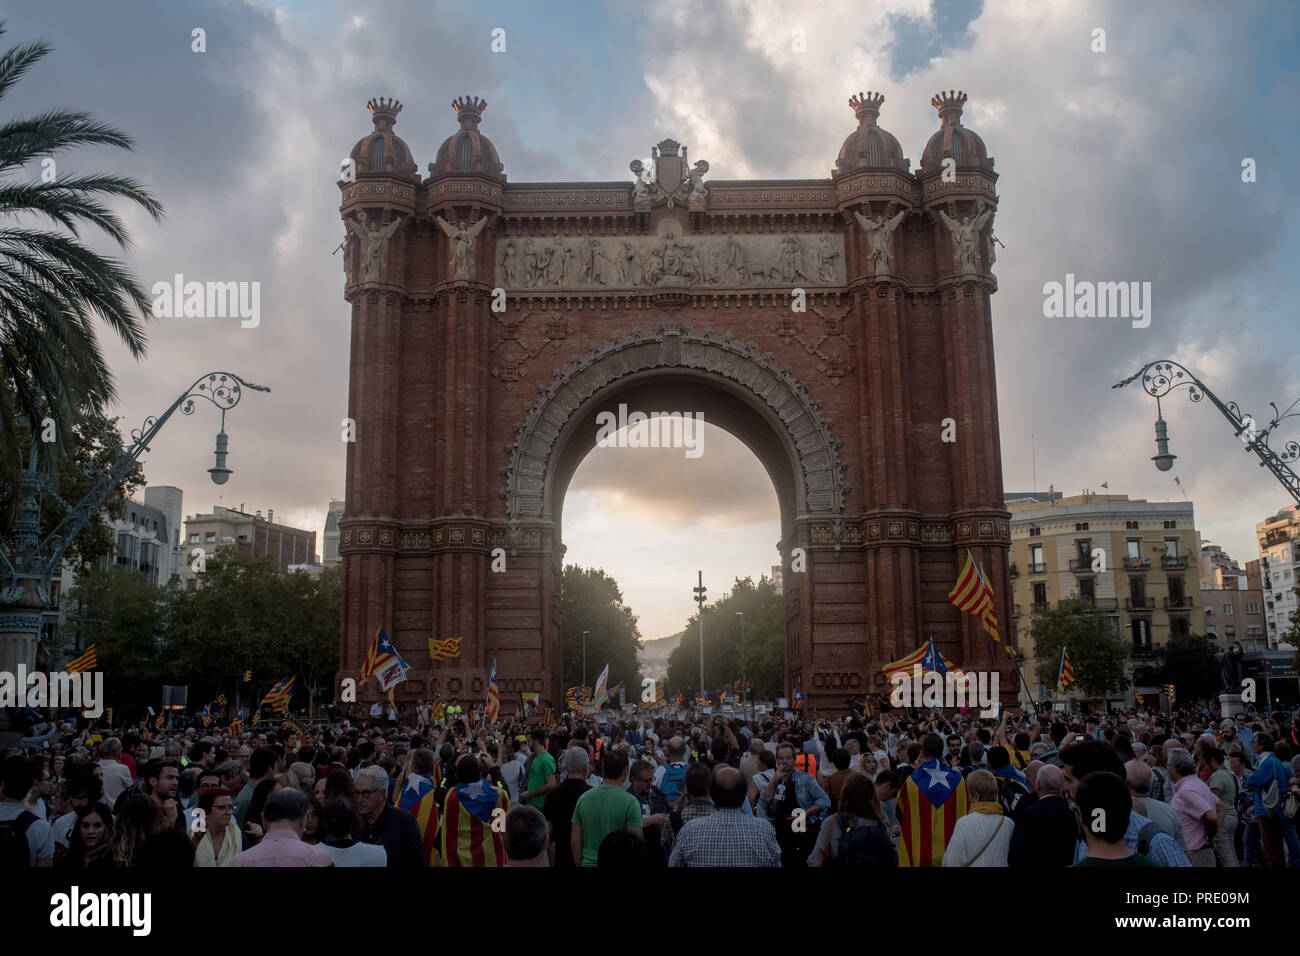 Octubre 01, 2018 - Barcelona, Cataluña, España - Miles de personas marcharon en Barcelona el 1 de octubre de 2018 recordando el referéndum sobre la independencia celebrado hace un año y que llevó a cientos de heridos, los electores españoles debido a la represión policial. Foto de stock